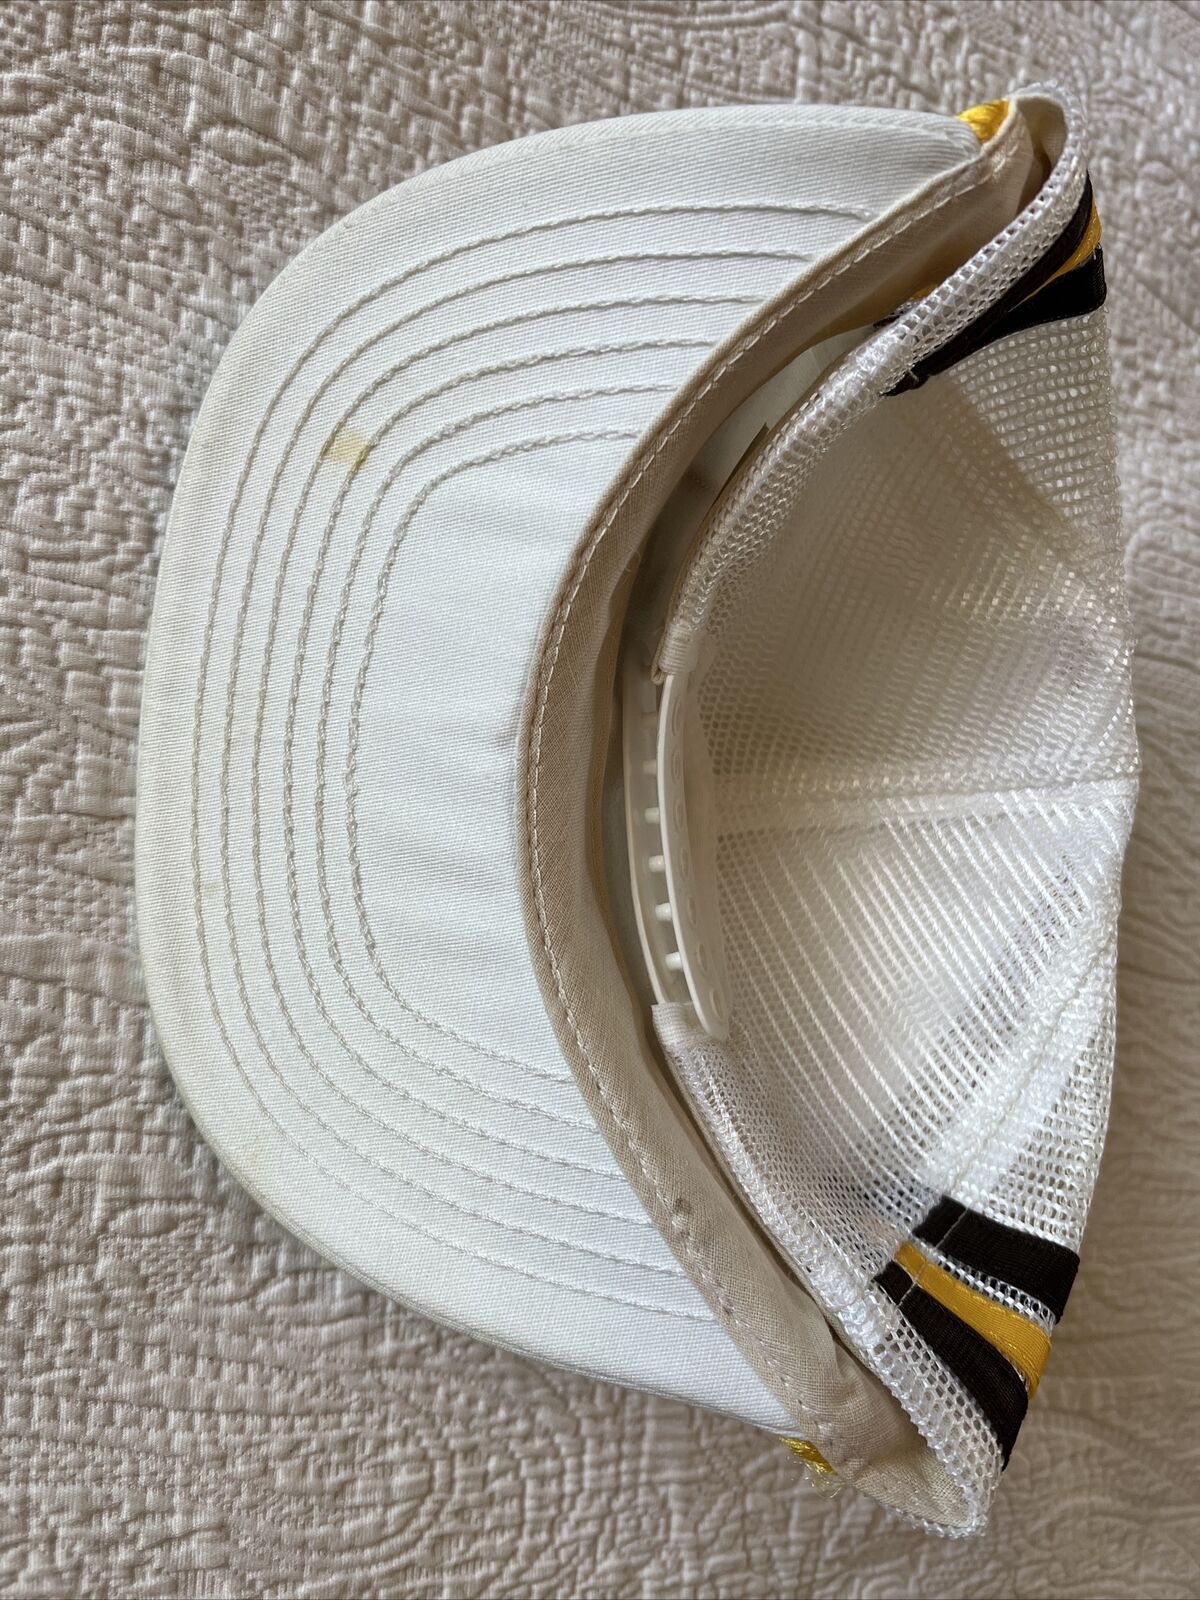 Vintage Geoff Bodine Three Stripe Trucker Hat Mes… - image 3